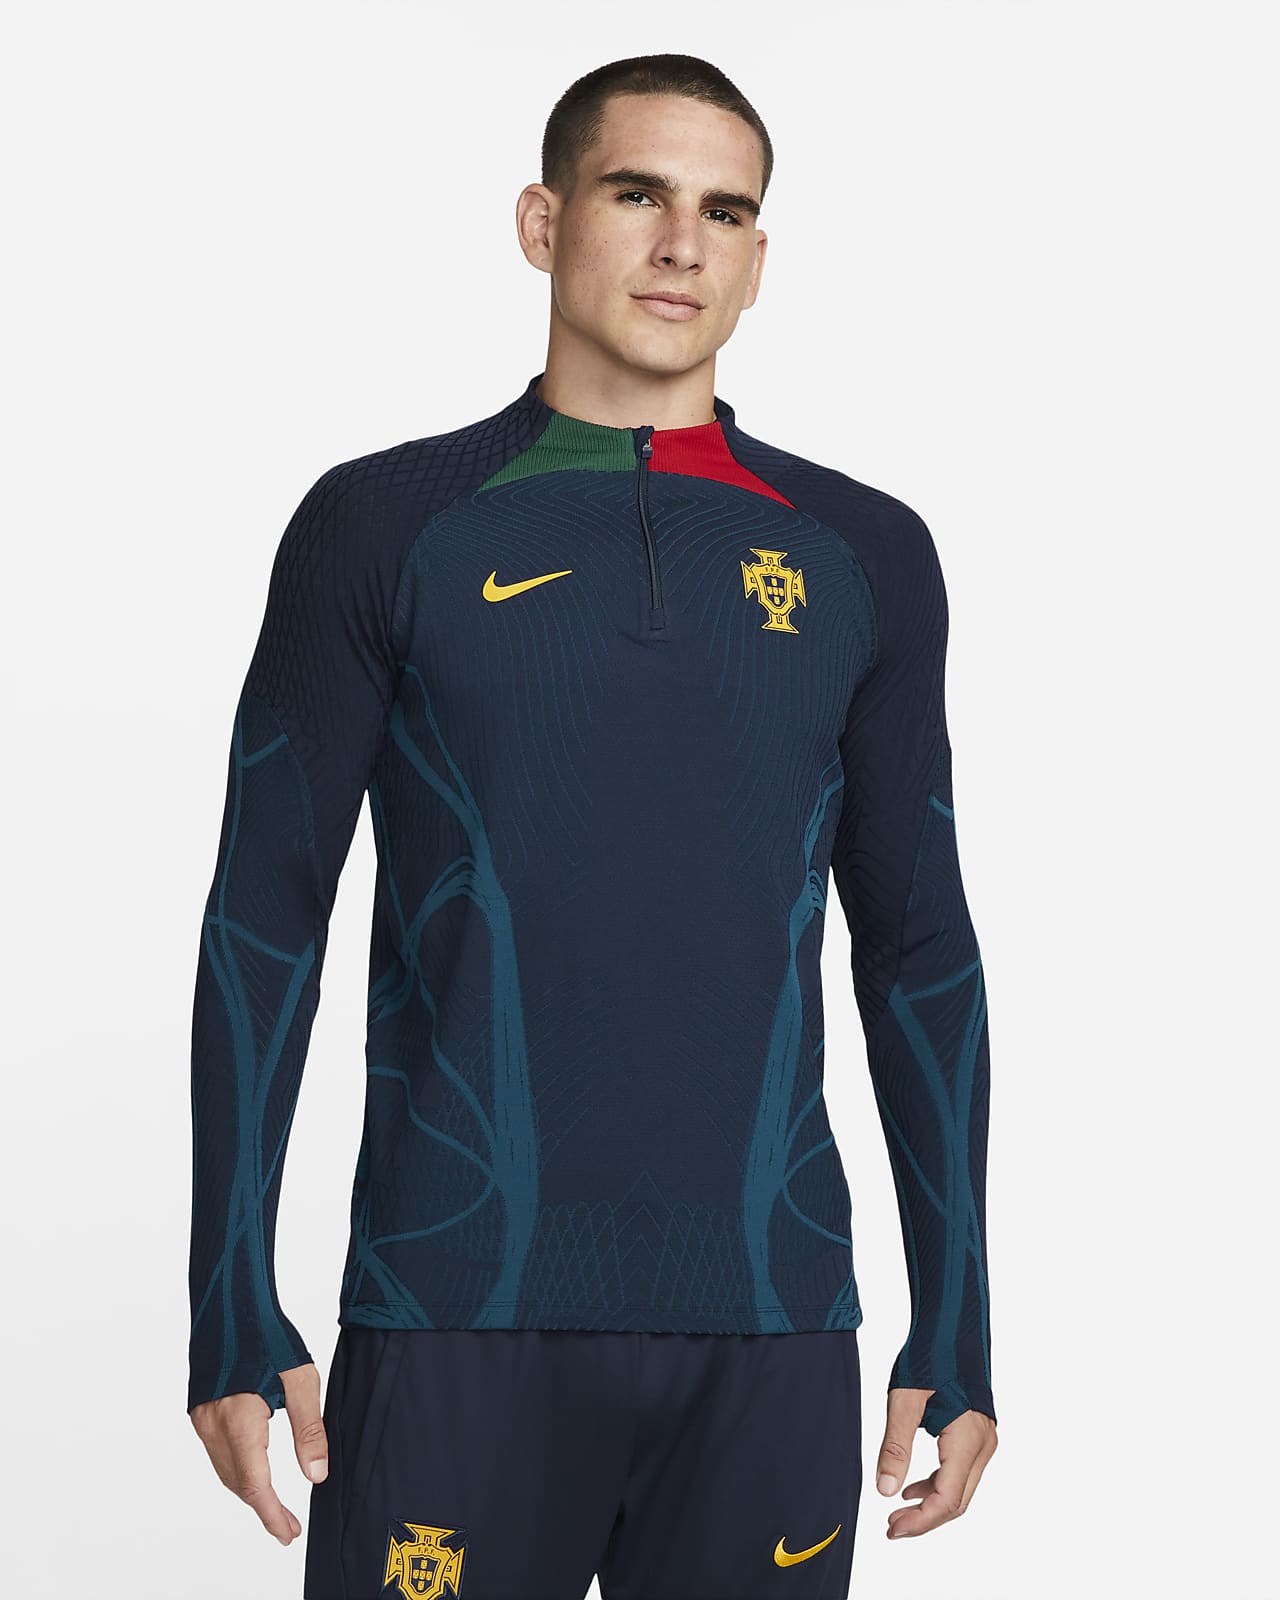 Ανδρική ποδοσφαιρική μπλούζα προπόνησης Nike Dri-FIT ADV Πορτογαλία Strike Elite